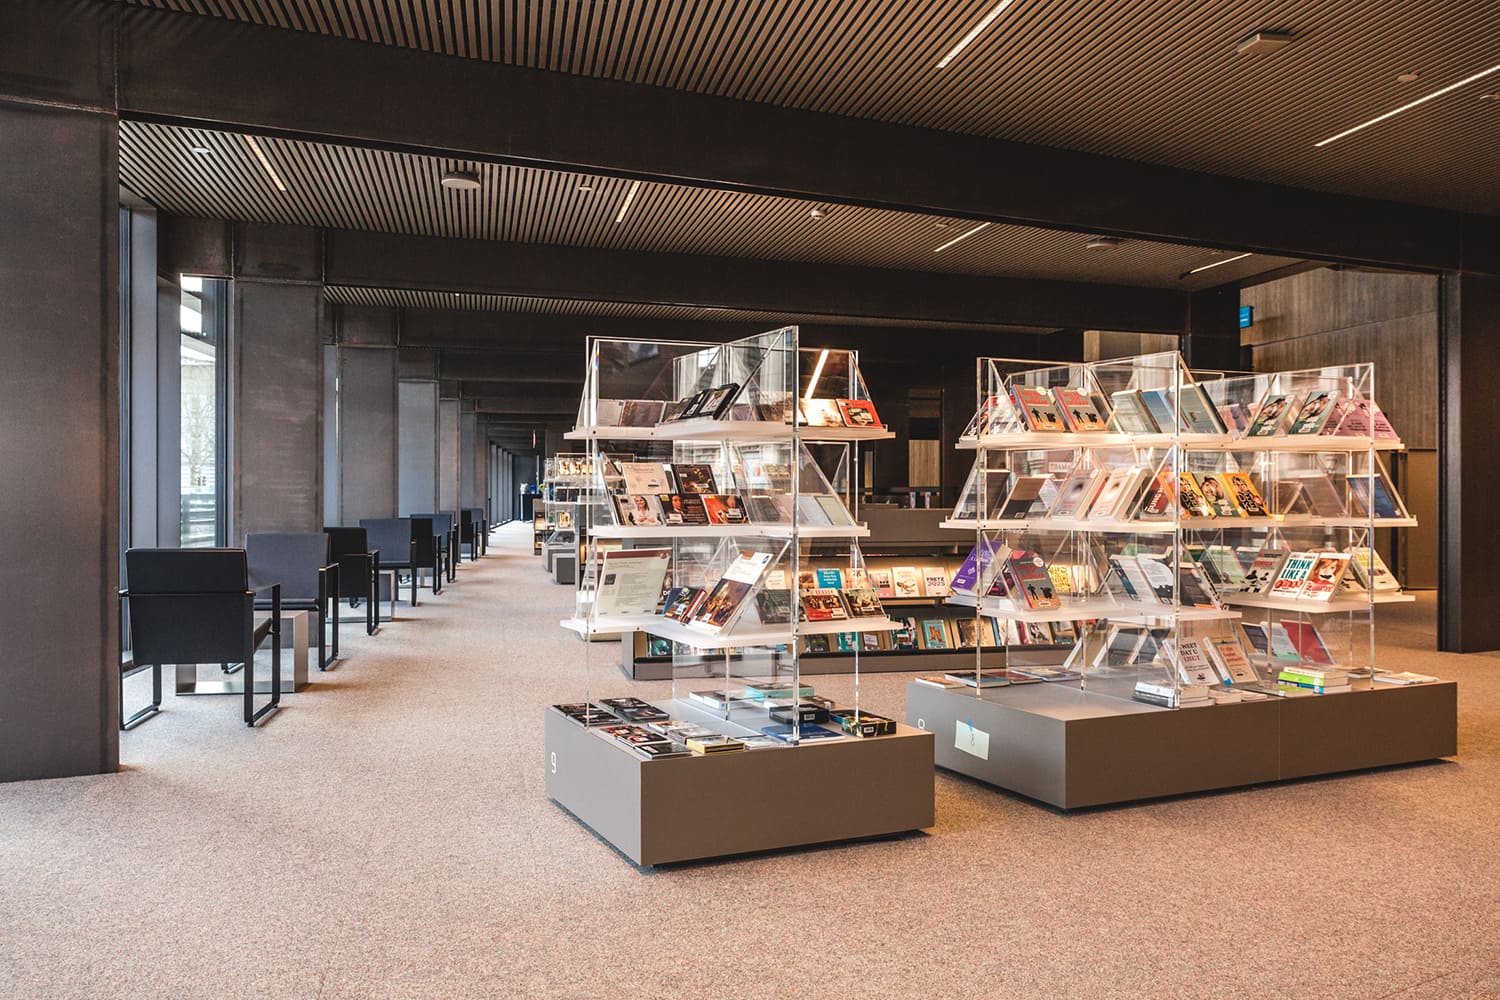 De Krook – Ghent Library